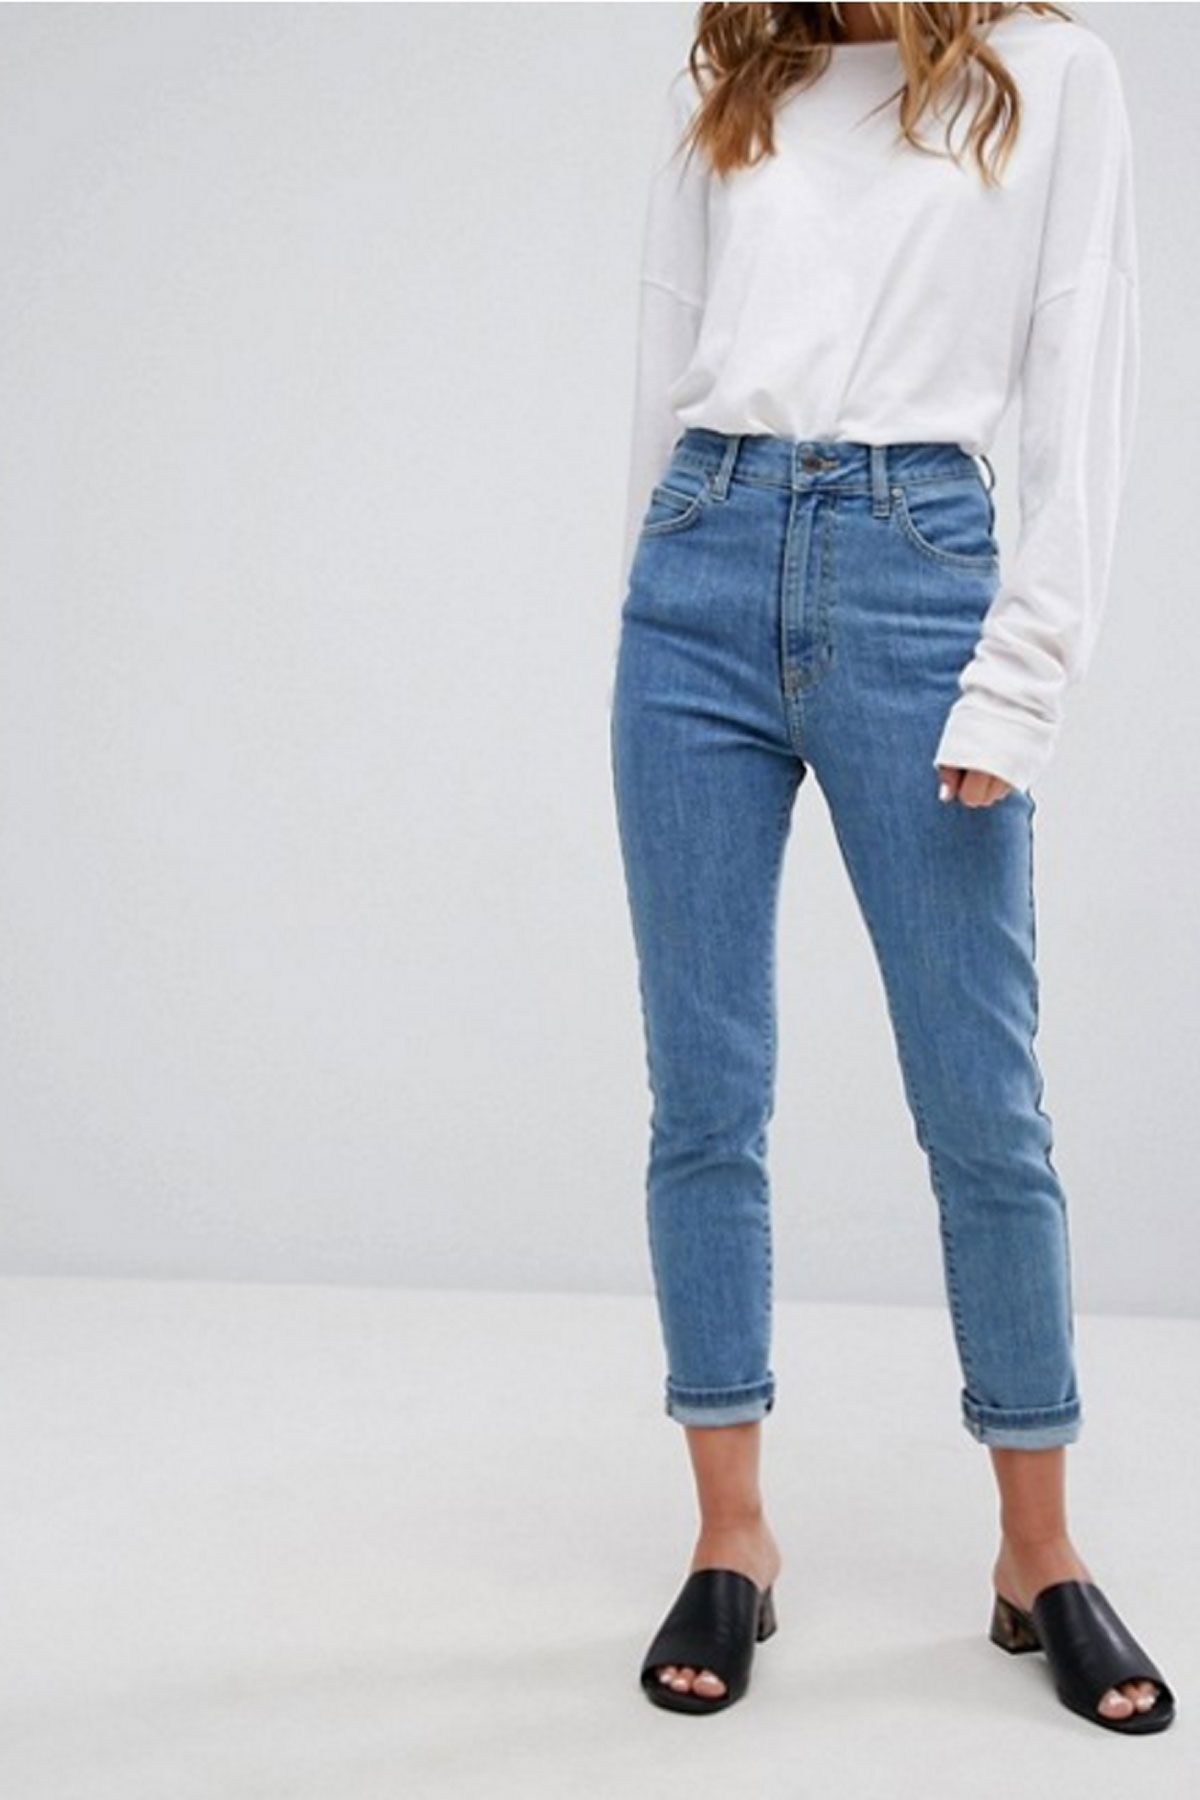 Что такое джинсы мом